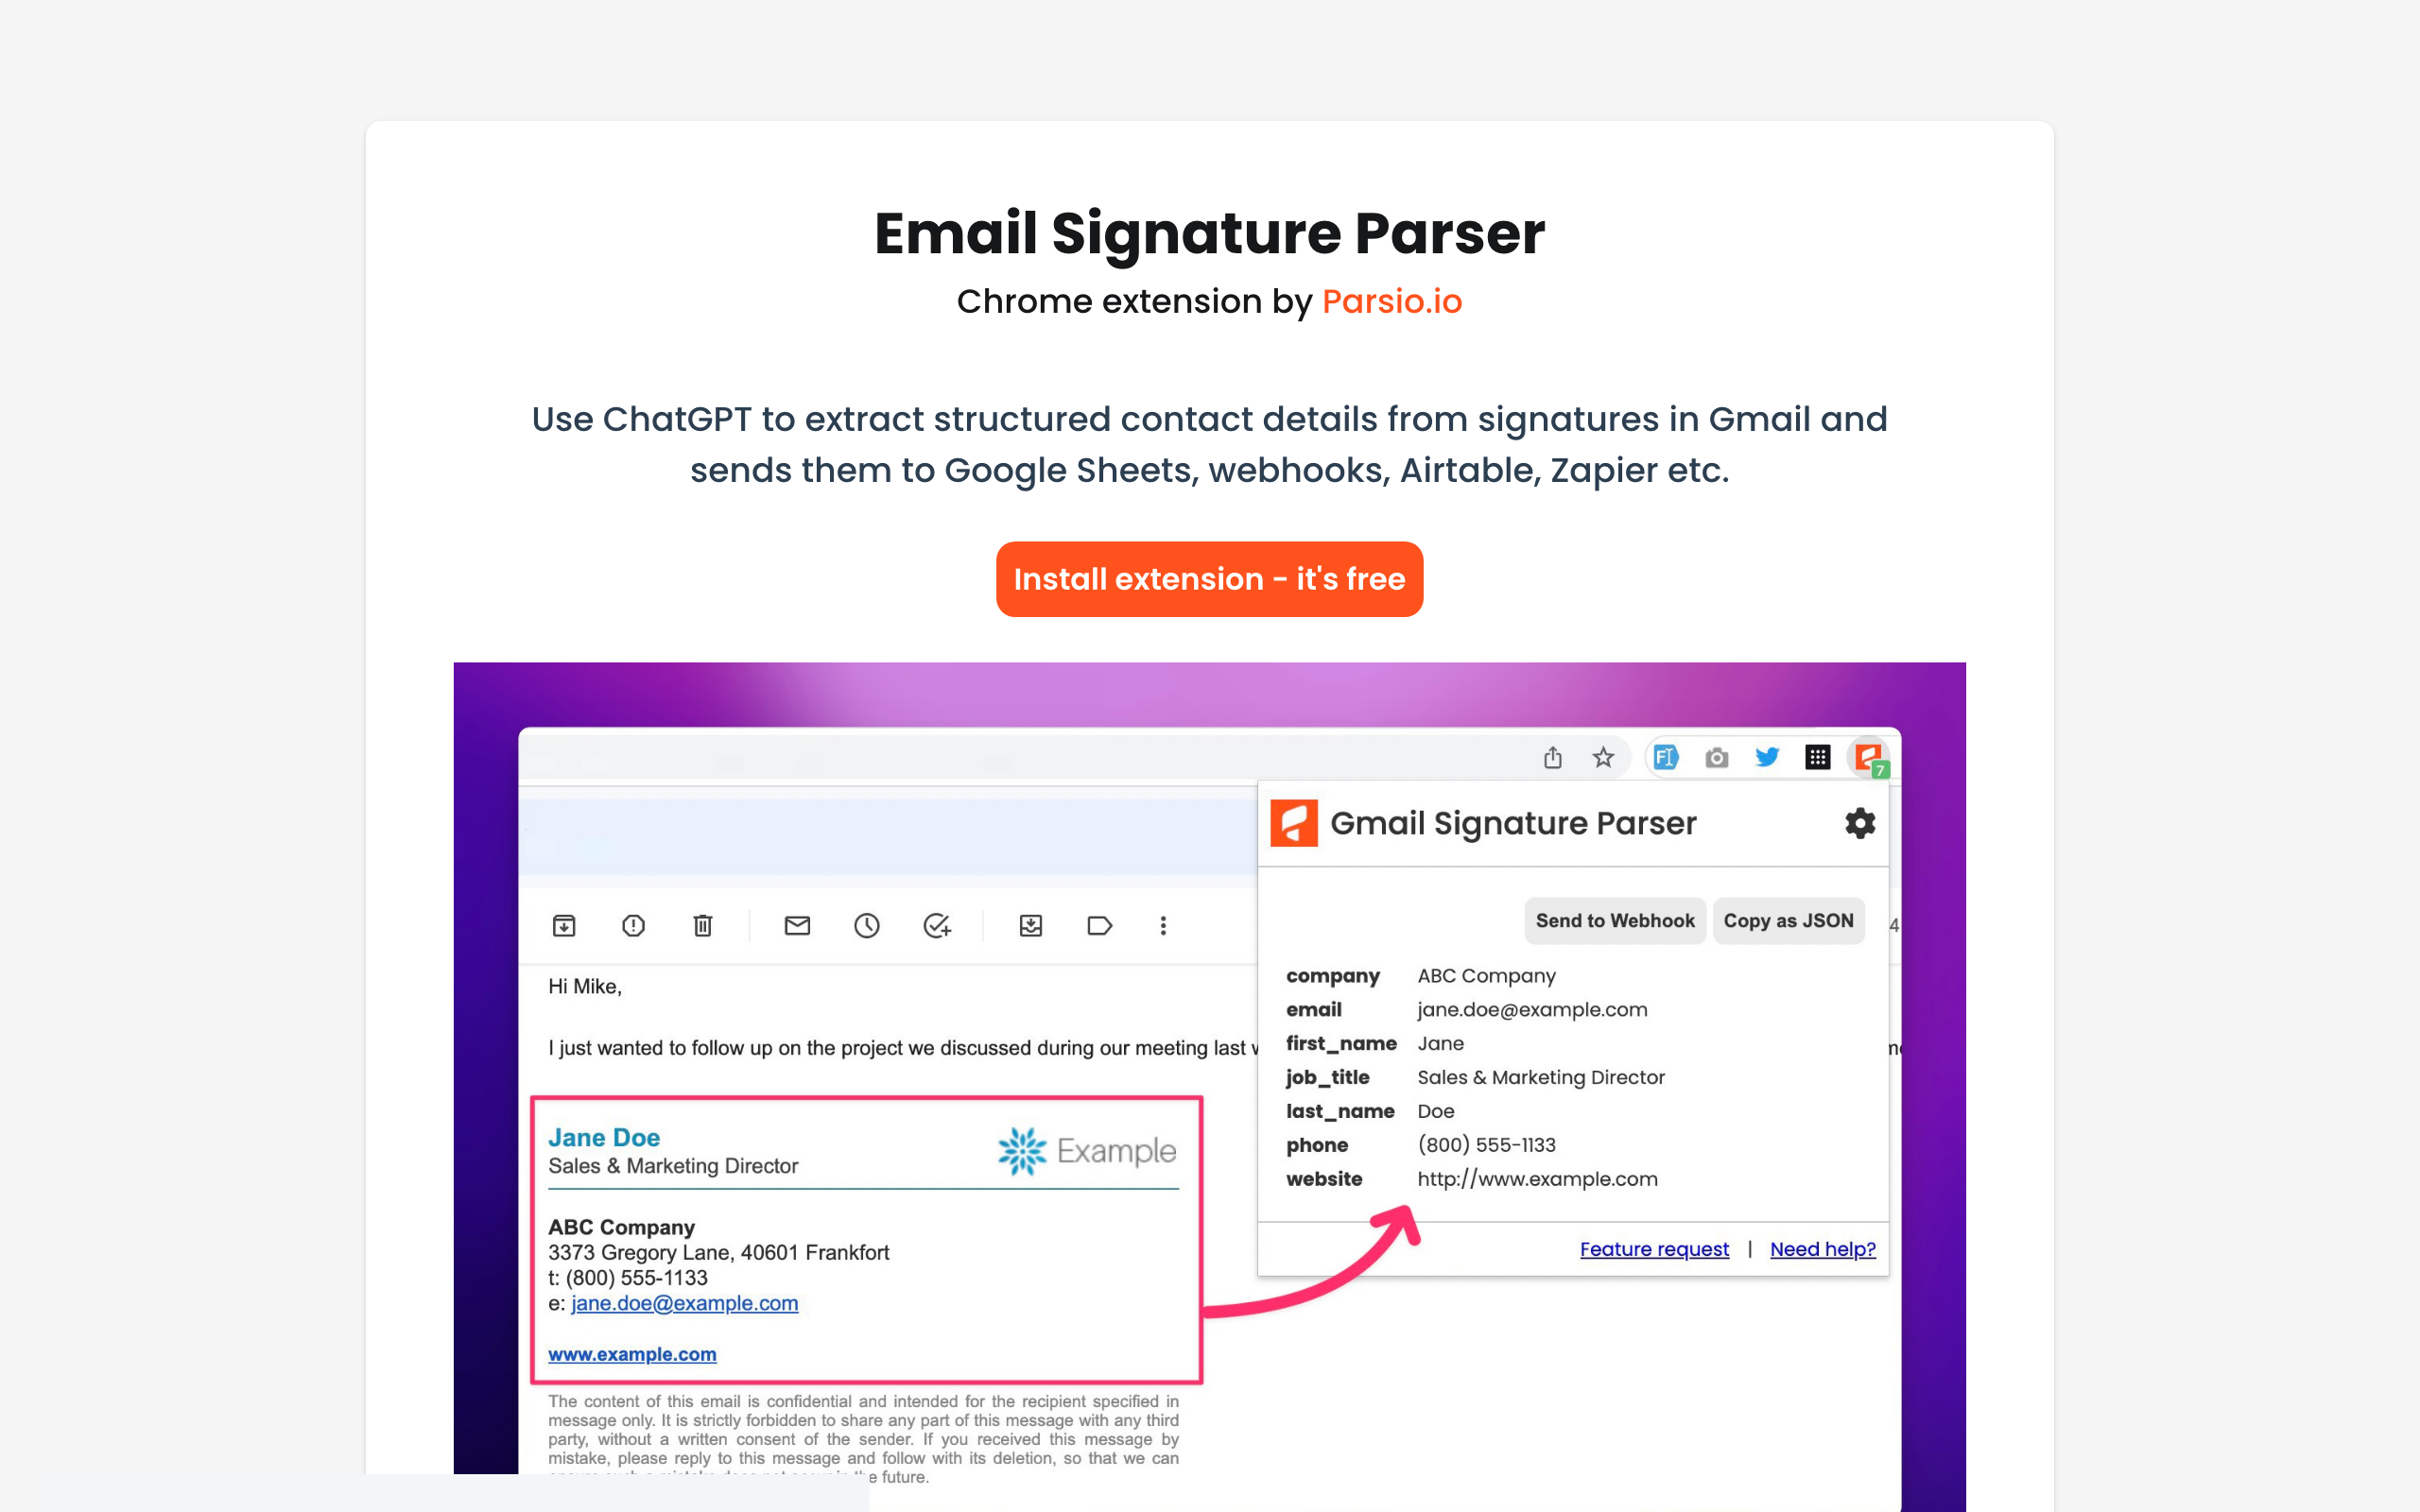 Gmail Signature Parser